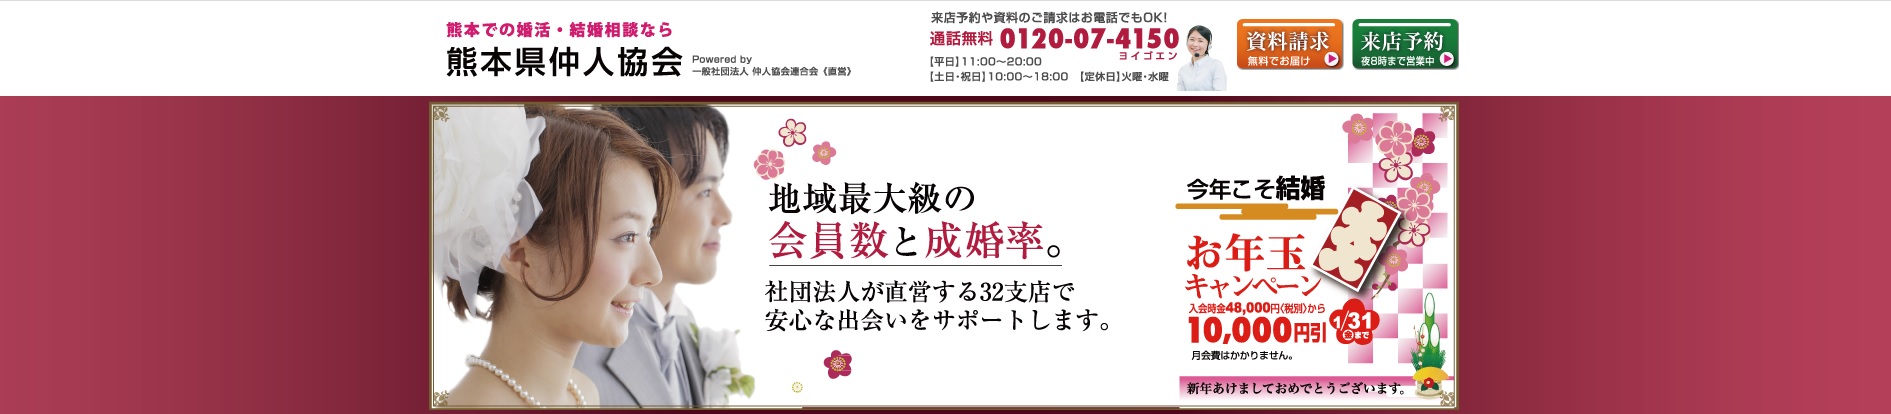 熊本県仲人協会のトップページのスクリーンショット